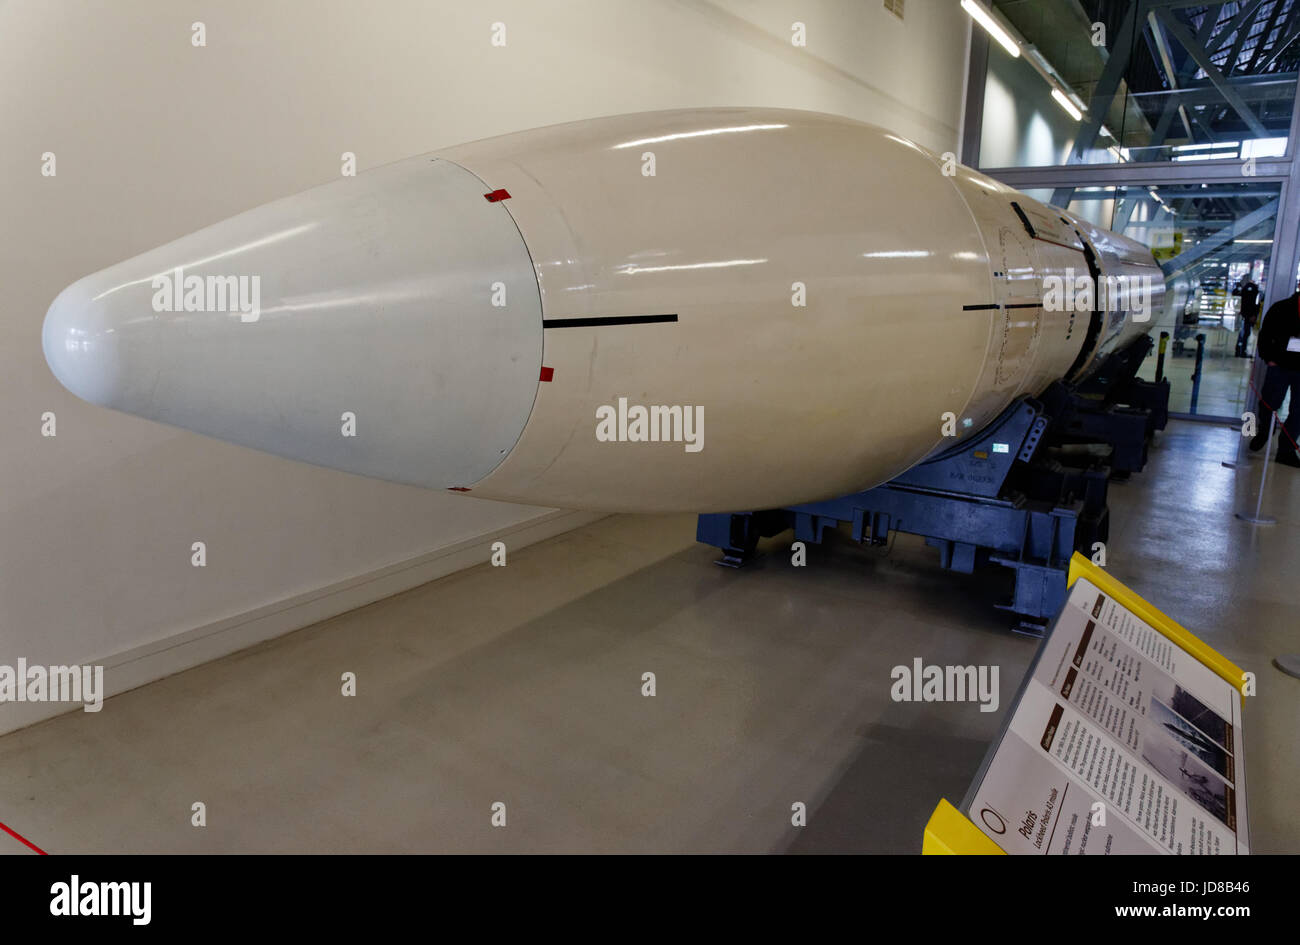 Lockheed Polaris A-3 missile, un sottomarino ha lanciato un missile balistico, talvolta noto con il termine generico di intercontinental missile balistico (missile intercontinentale) Foto Stock